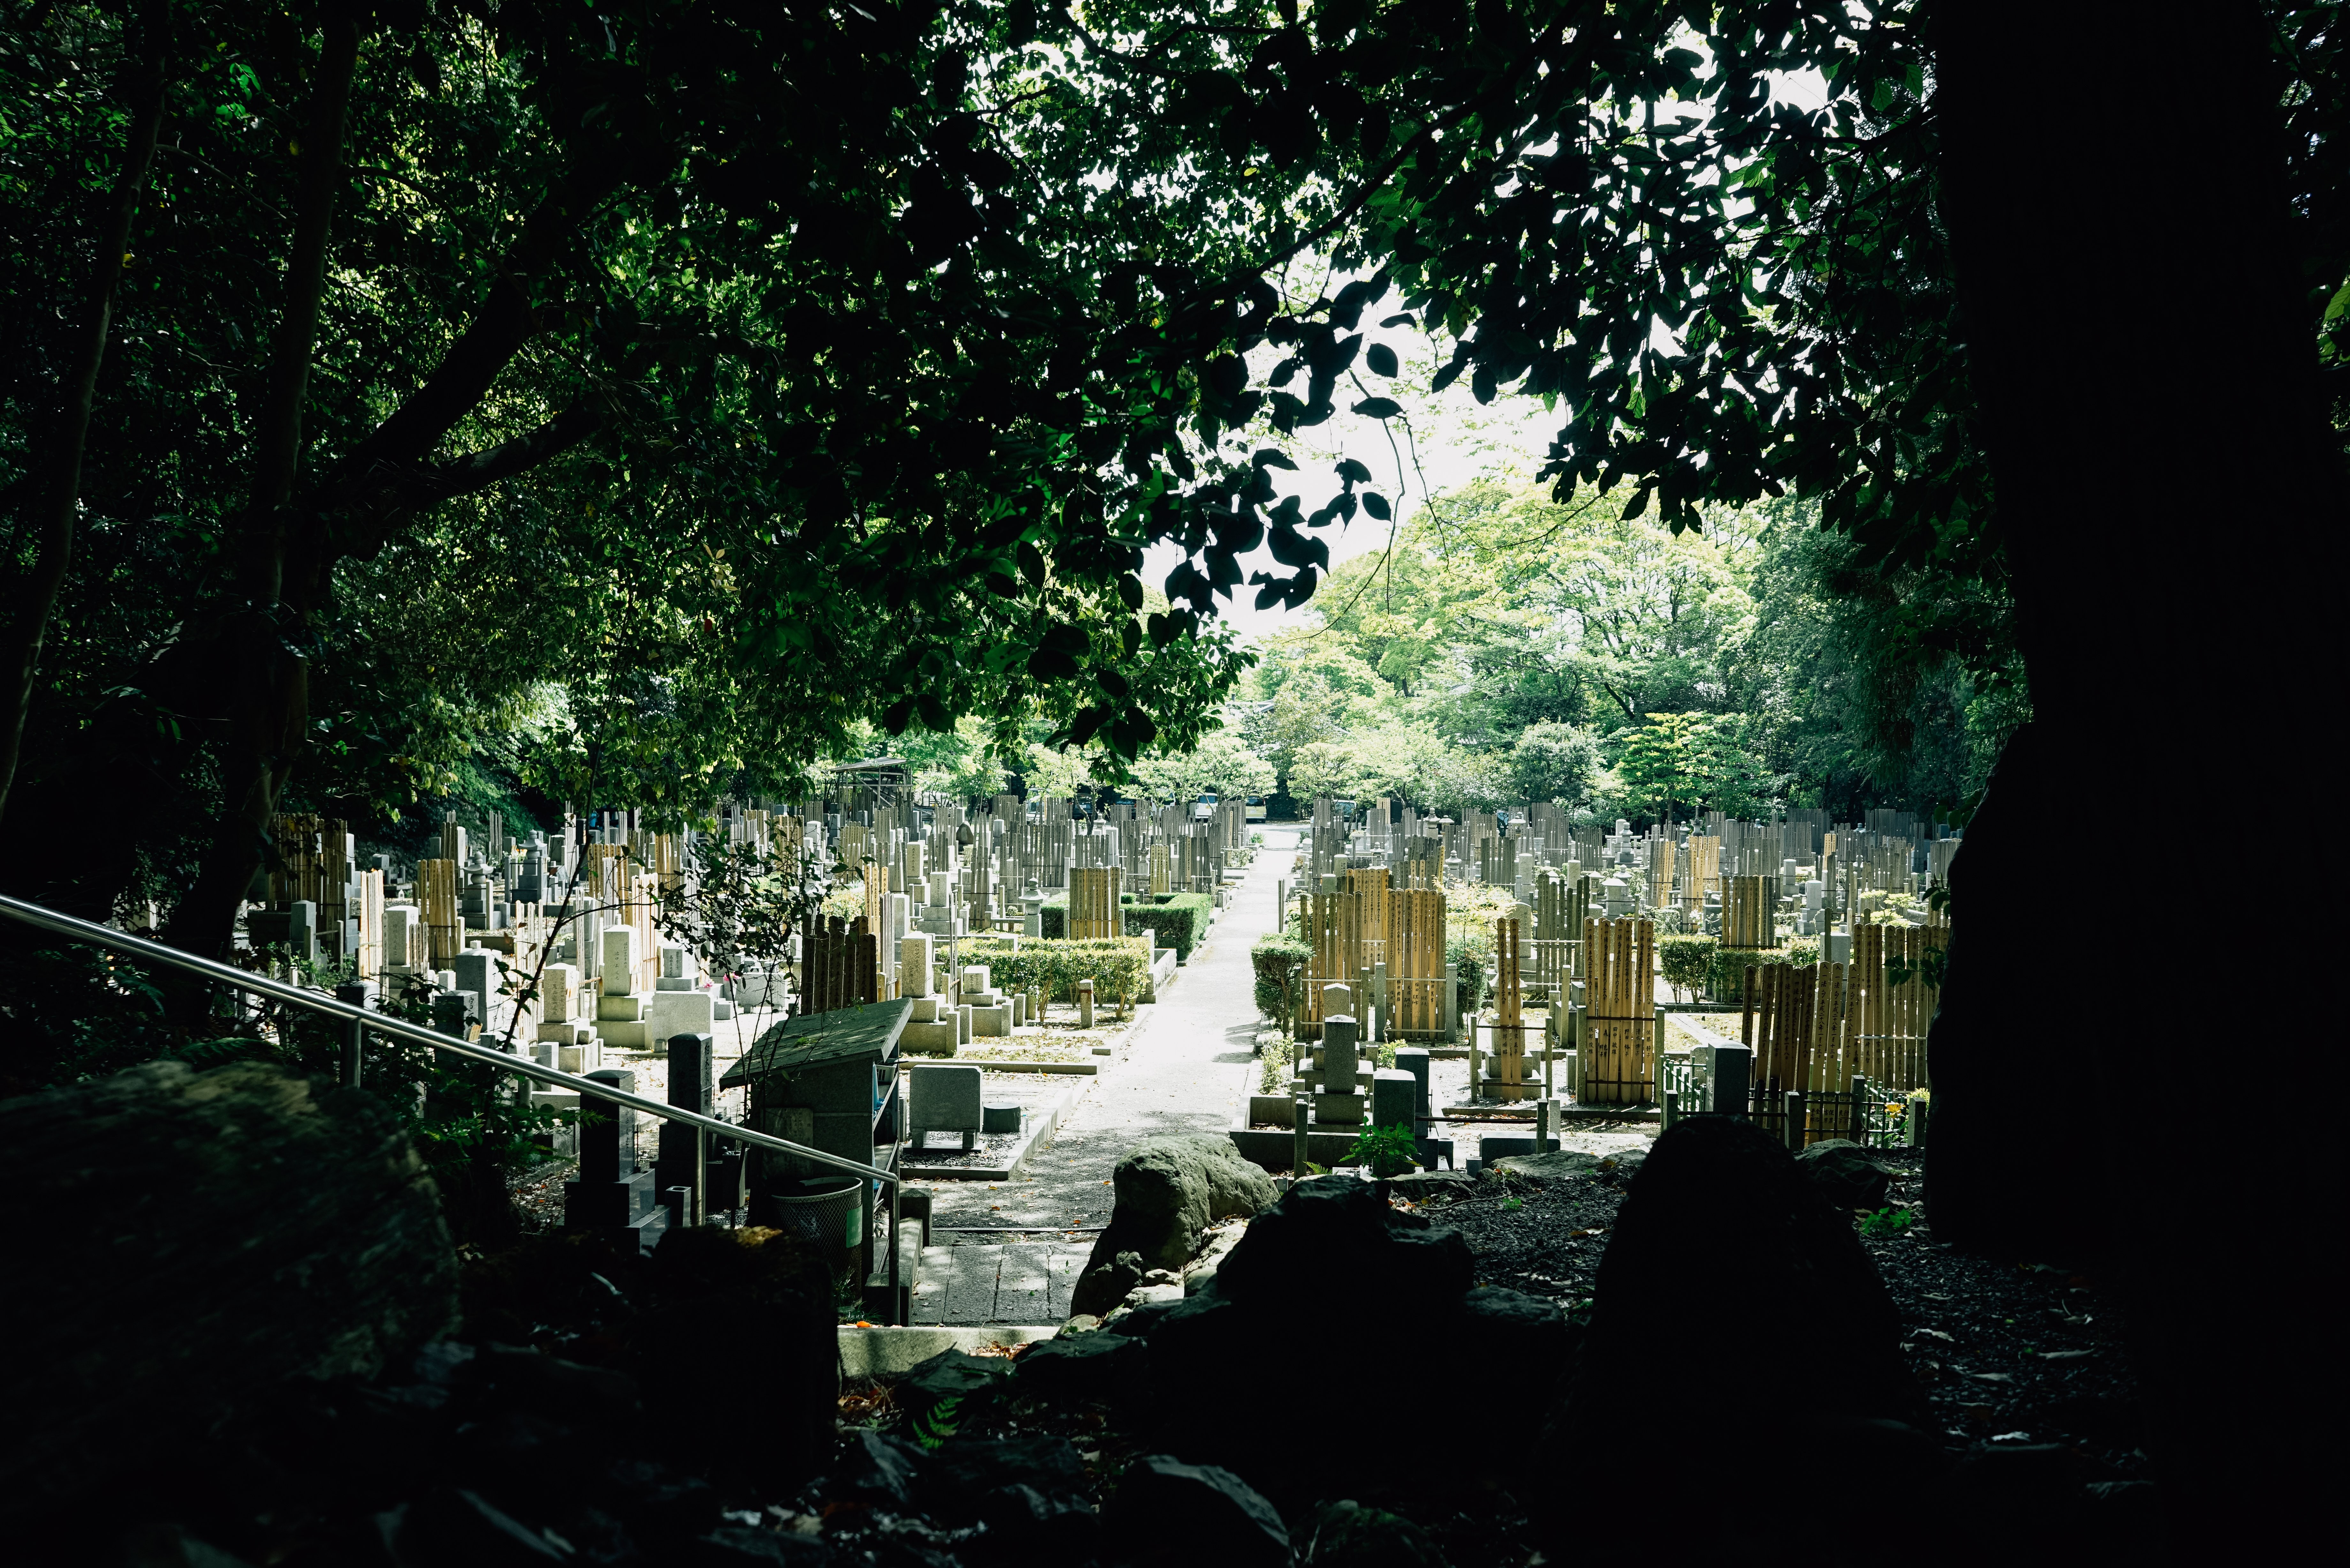 Foto do cemitério japonês iluminando a luz do sol